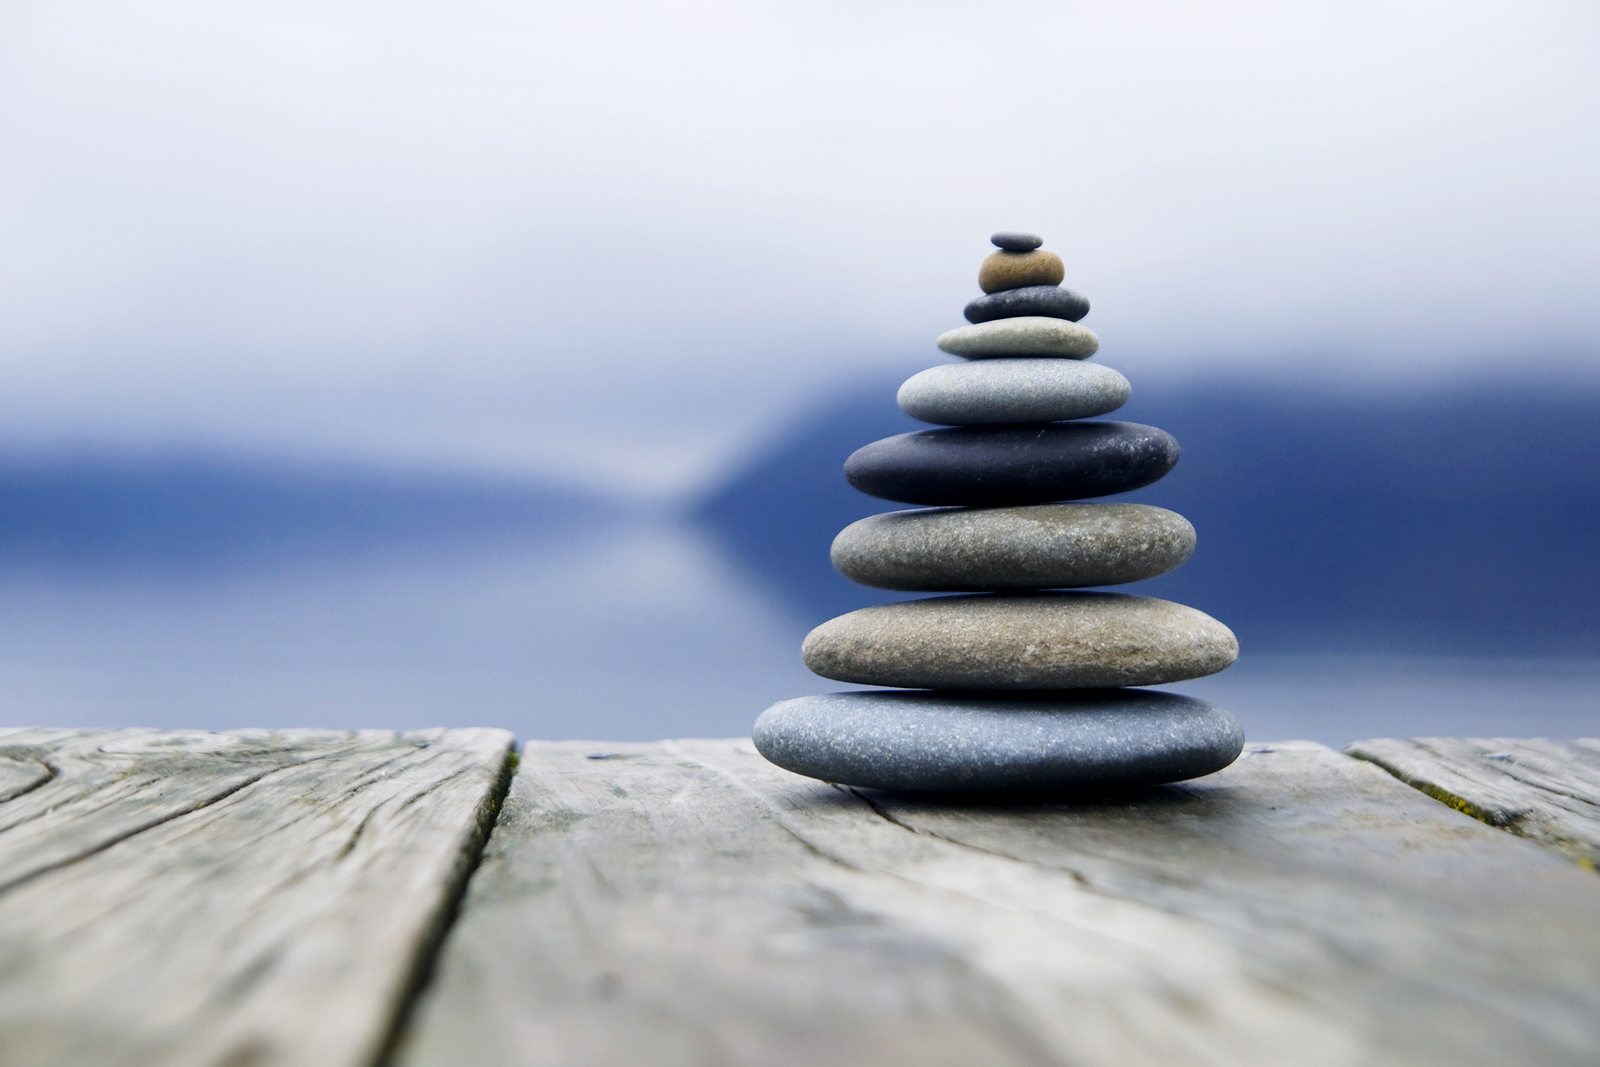 Zen Balancing Rocks o a Deck, New Zealand